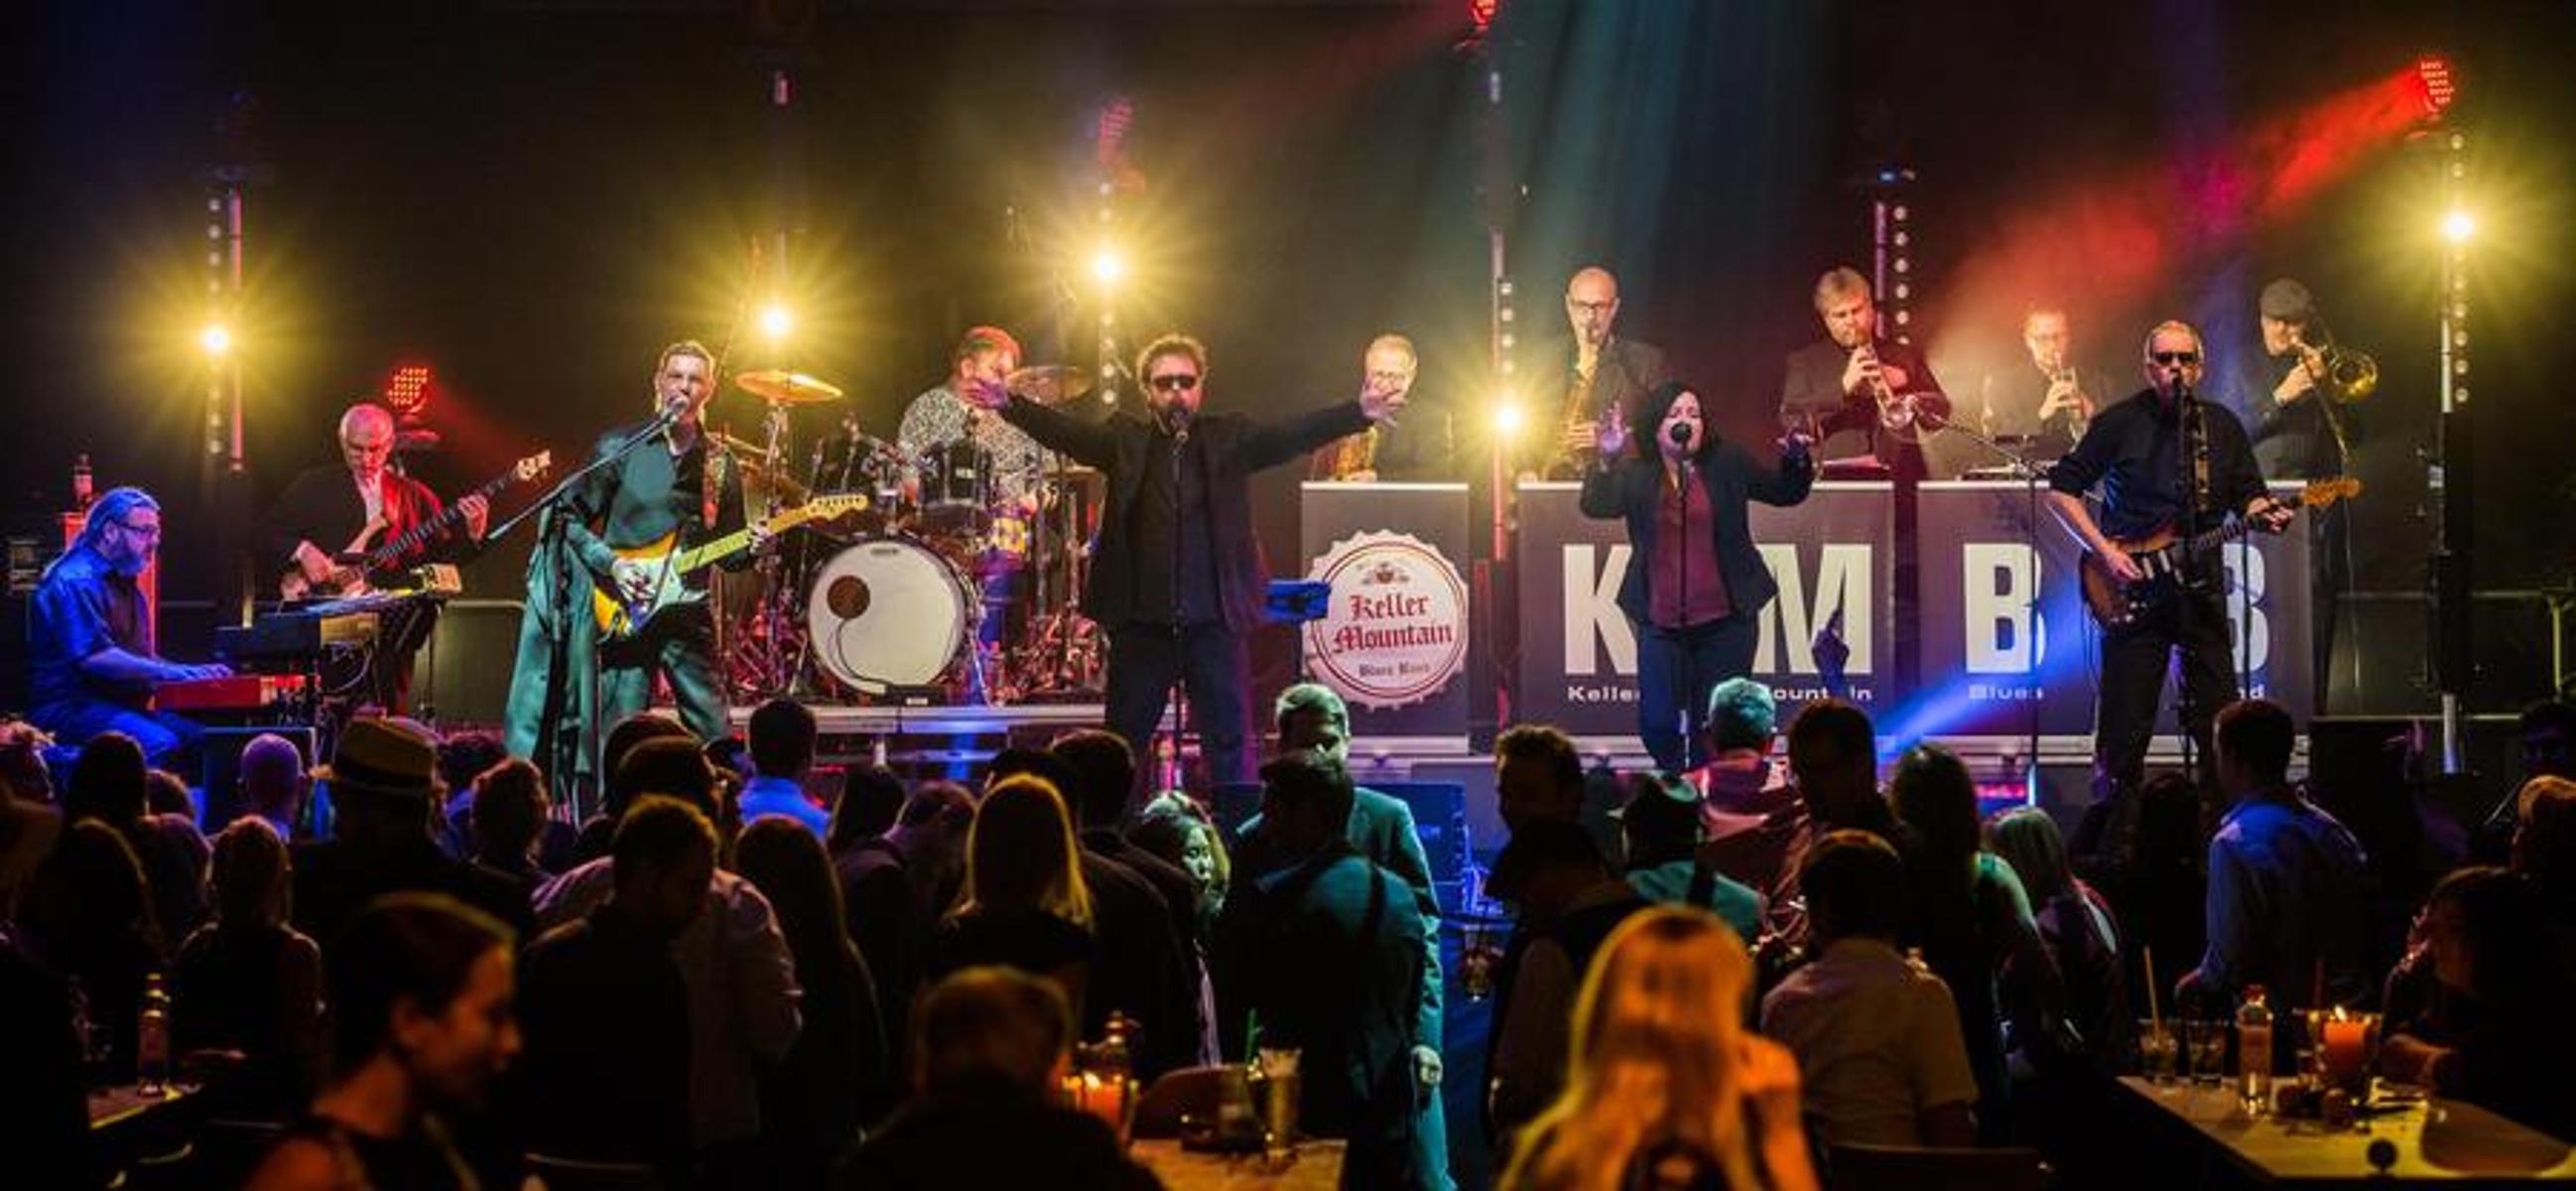 Keller Mountain Blues Band, die Formation, die seit 1985 in Oberfranken den Rhythm n Blues definiert, ist in ihrer Heimat längst eine Legende.Mit den beiden Leadsängern Nadin Albrecht und Alex Teubner, der groovigen Rhythm-Section und ihrem „Killer“-Bläsersatz ist die 11-köpfige Band ...